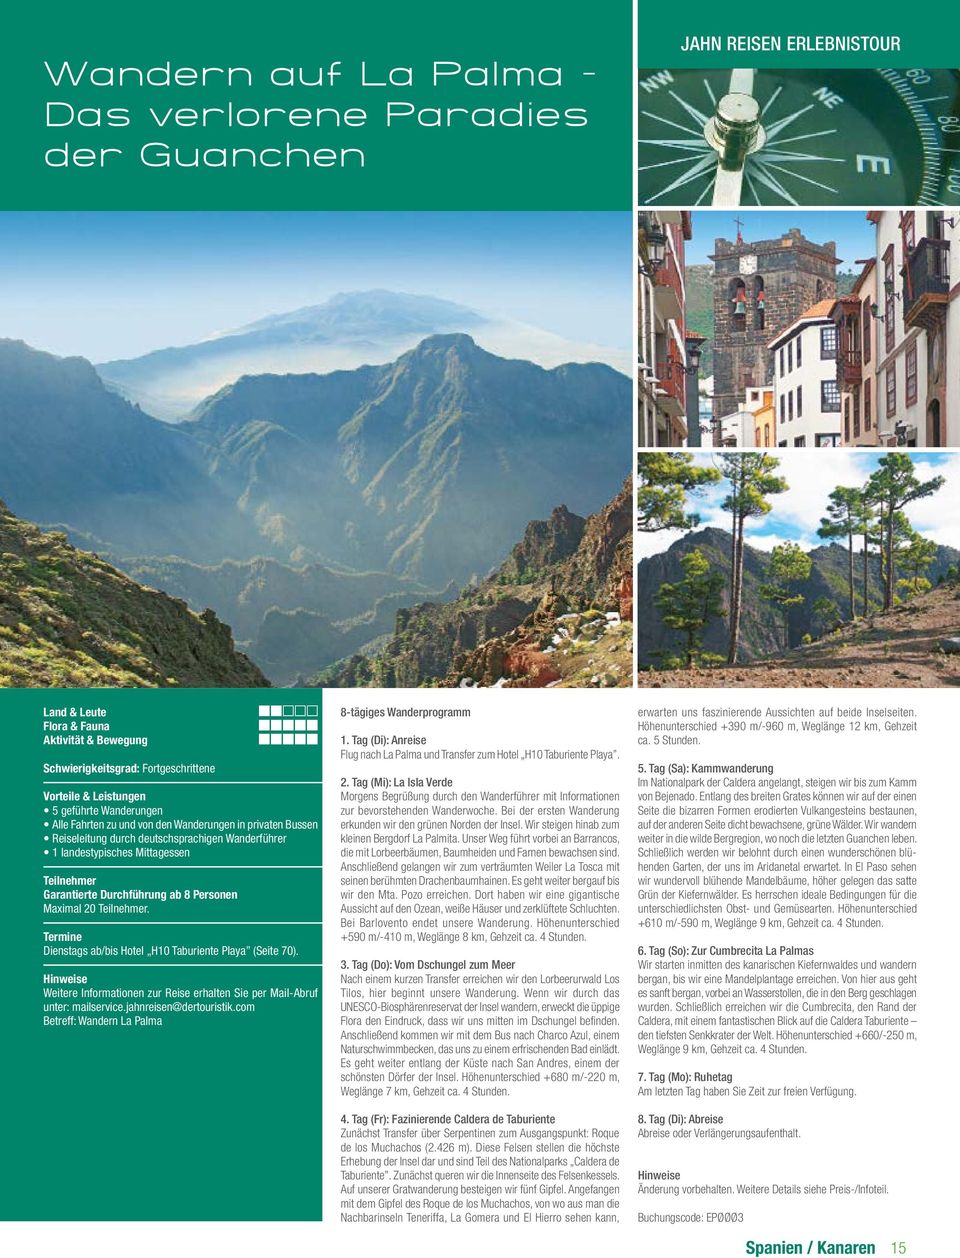 Weitere Informationen zur Reise erhalten Sie per Mail-Abruf unter: mailservice.jahnreisen@dertouristik.com Betreff: Wandern La Palma 8-tägiges Wanderprogramm 1.